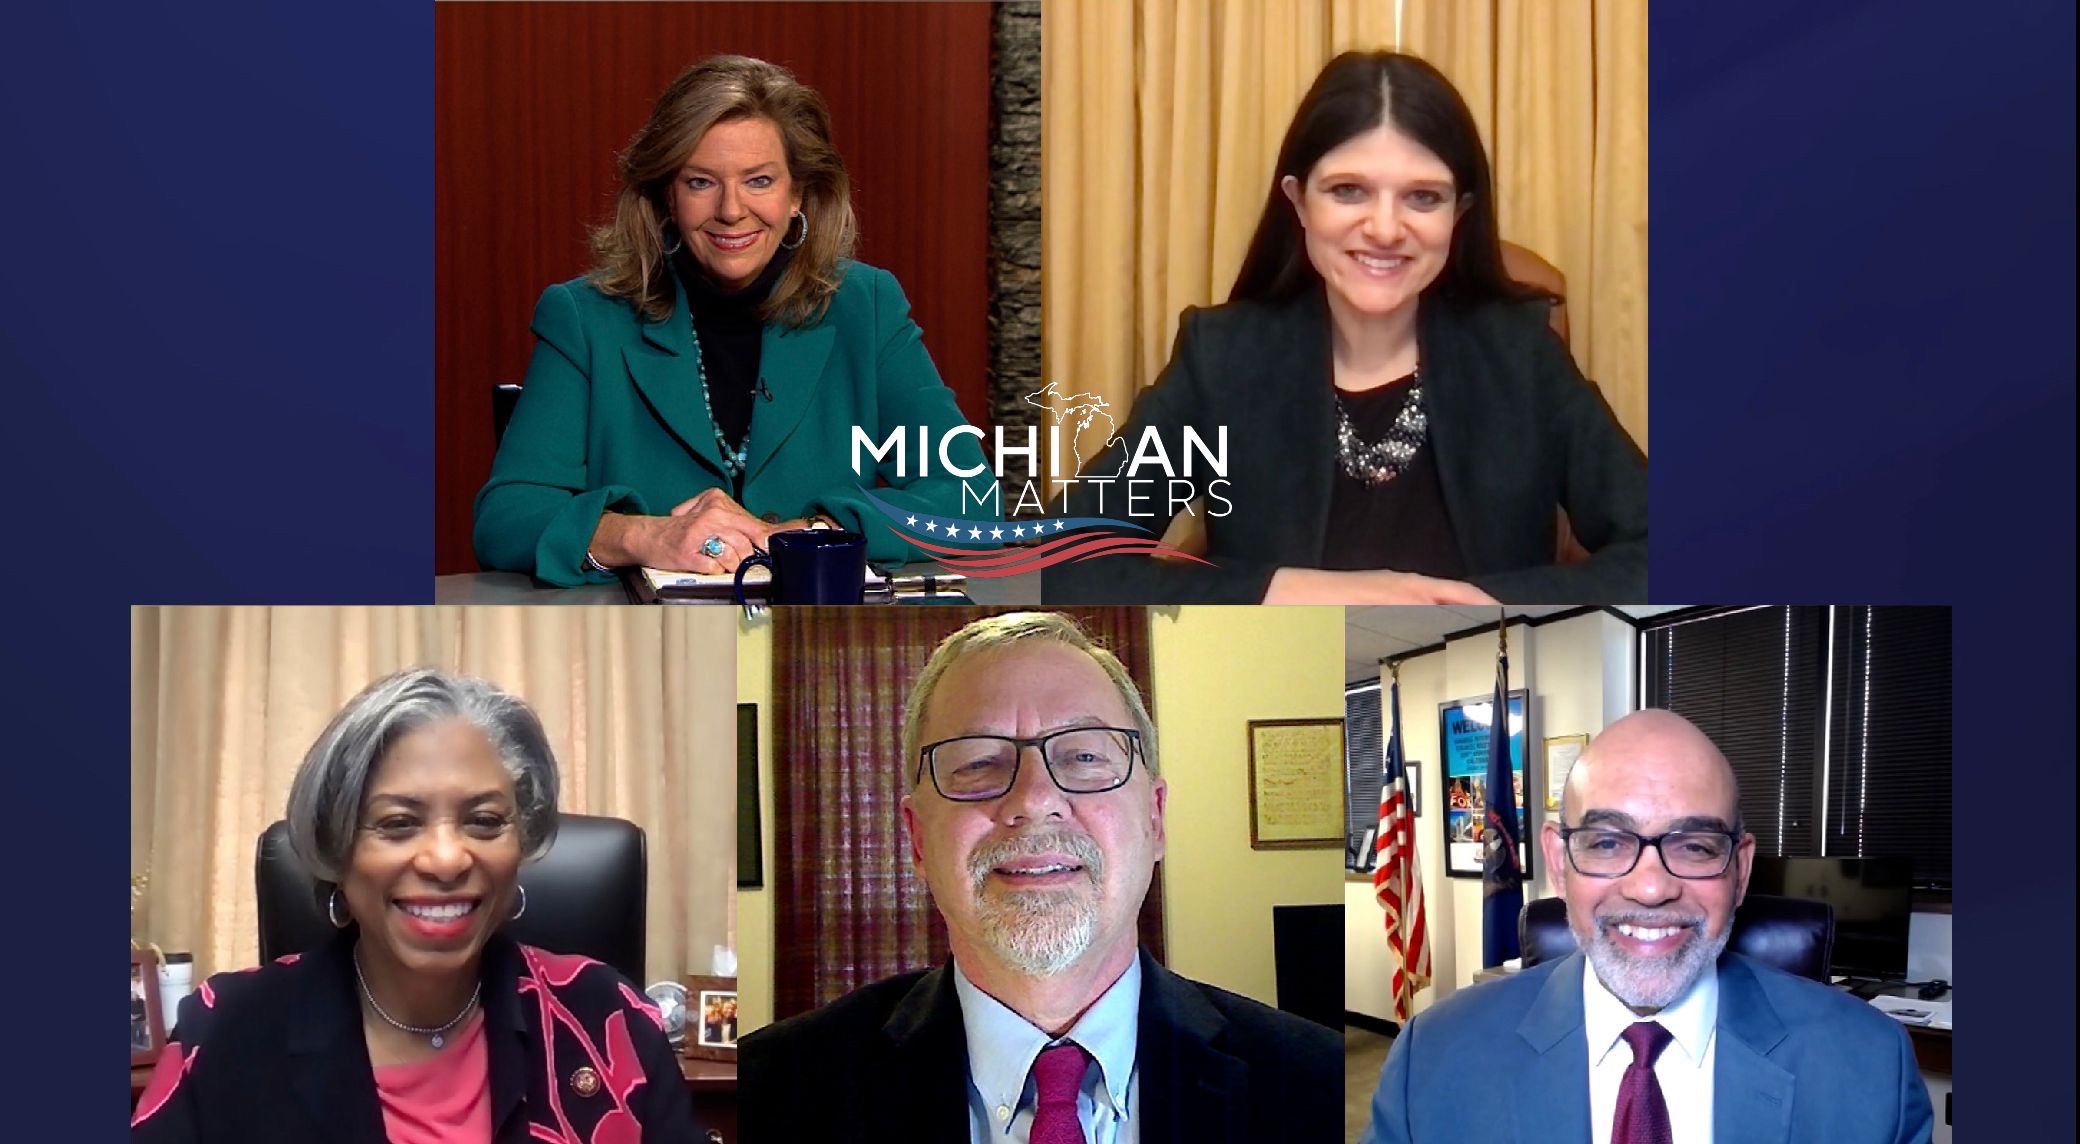 Michigan Matters: Talk of Politics & Homes